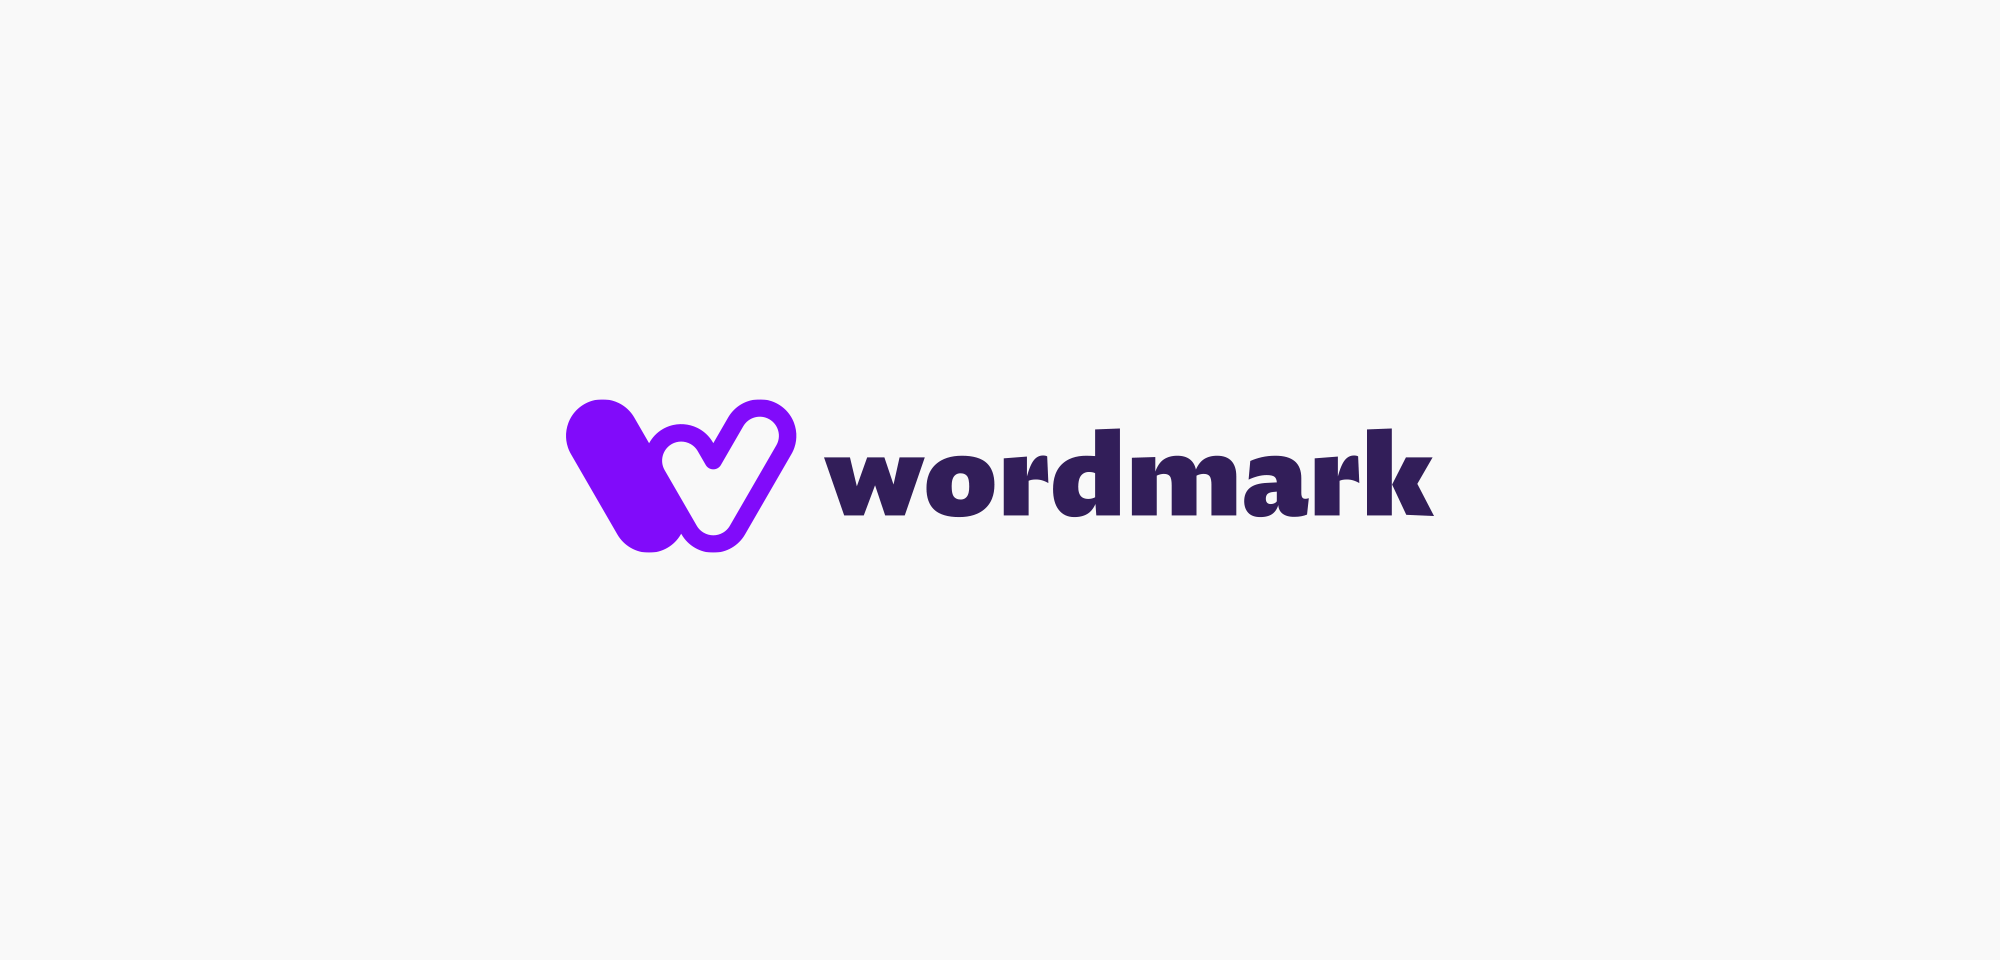 wordmark